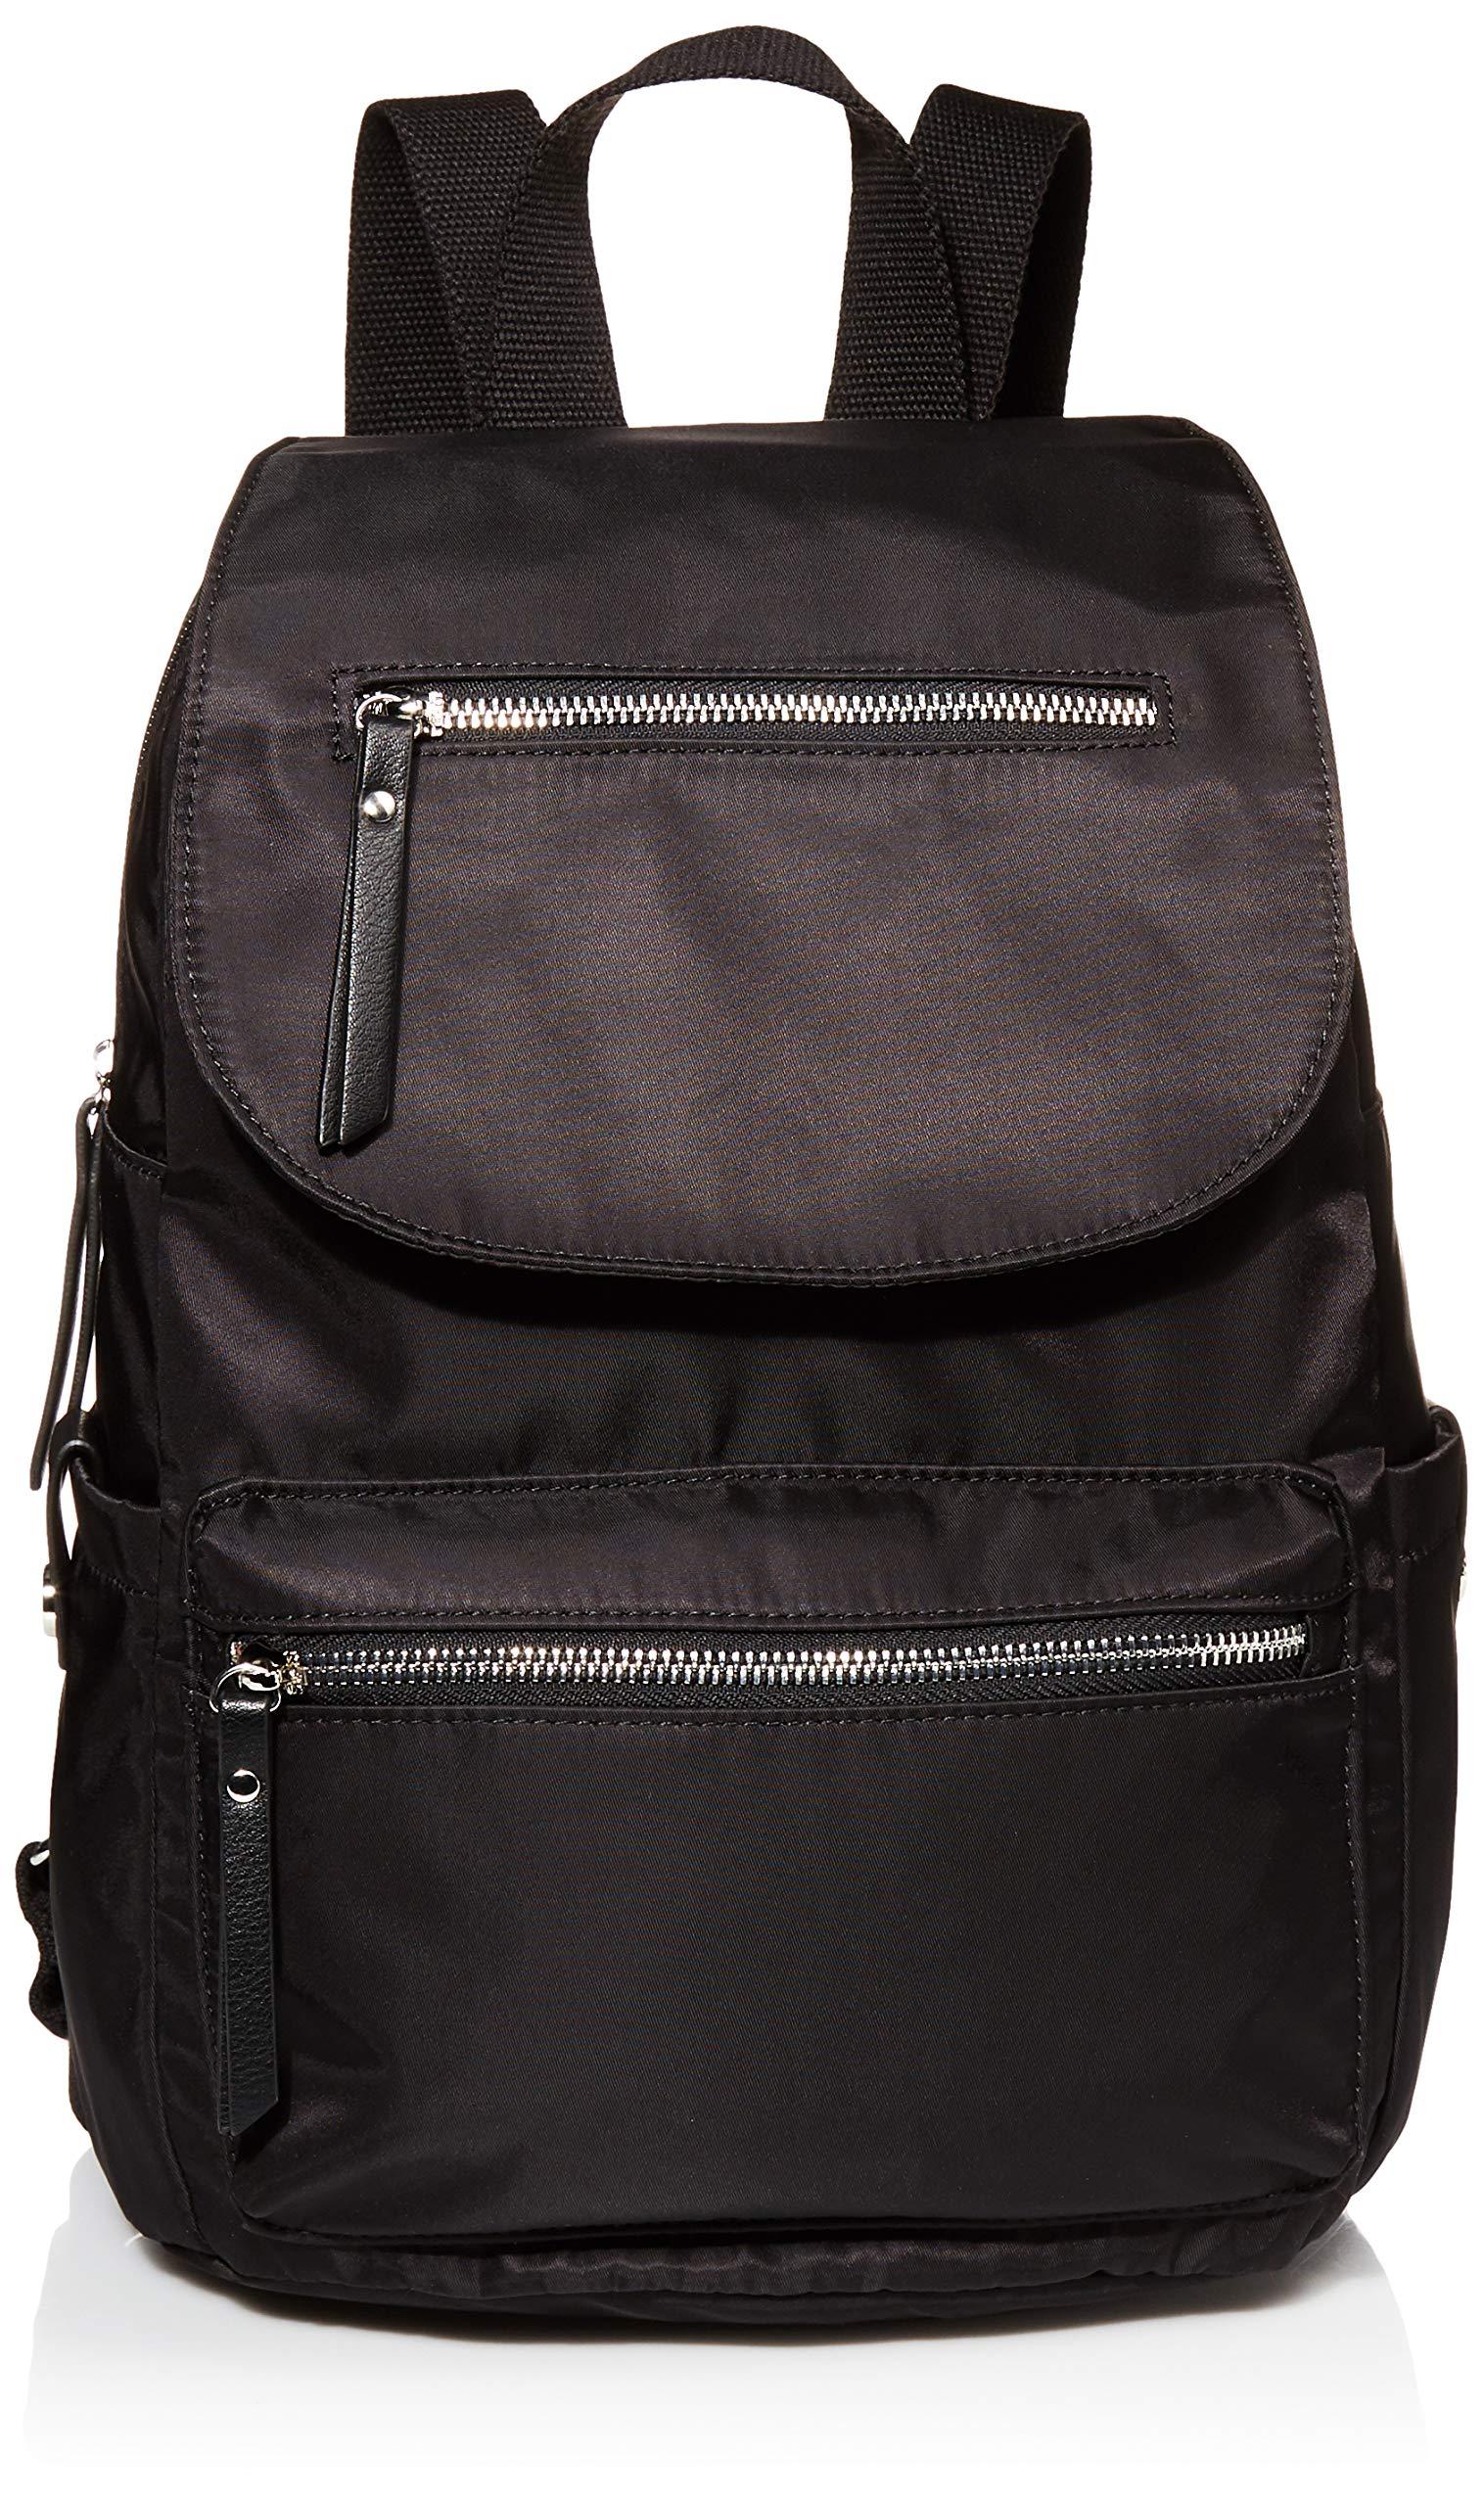 Madden Girl Mg Nylon Flap Backpack in Black | Lyst